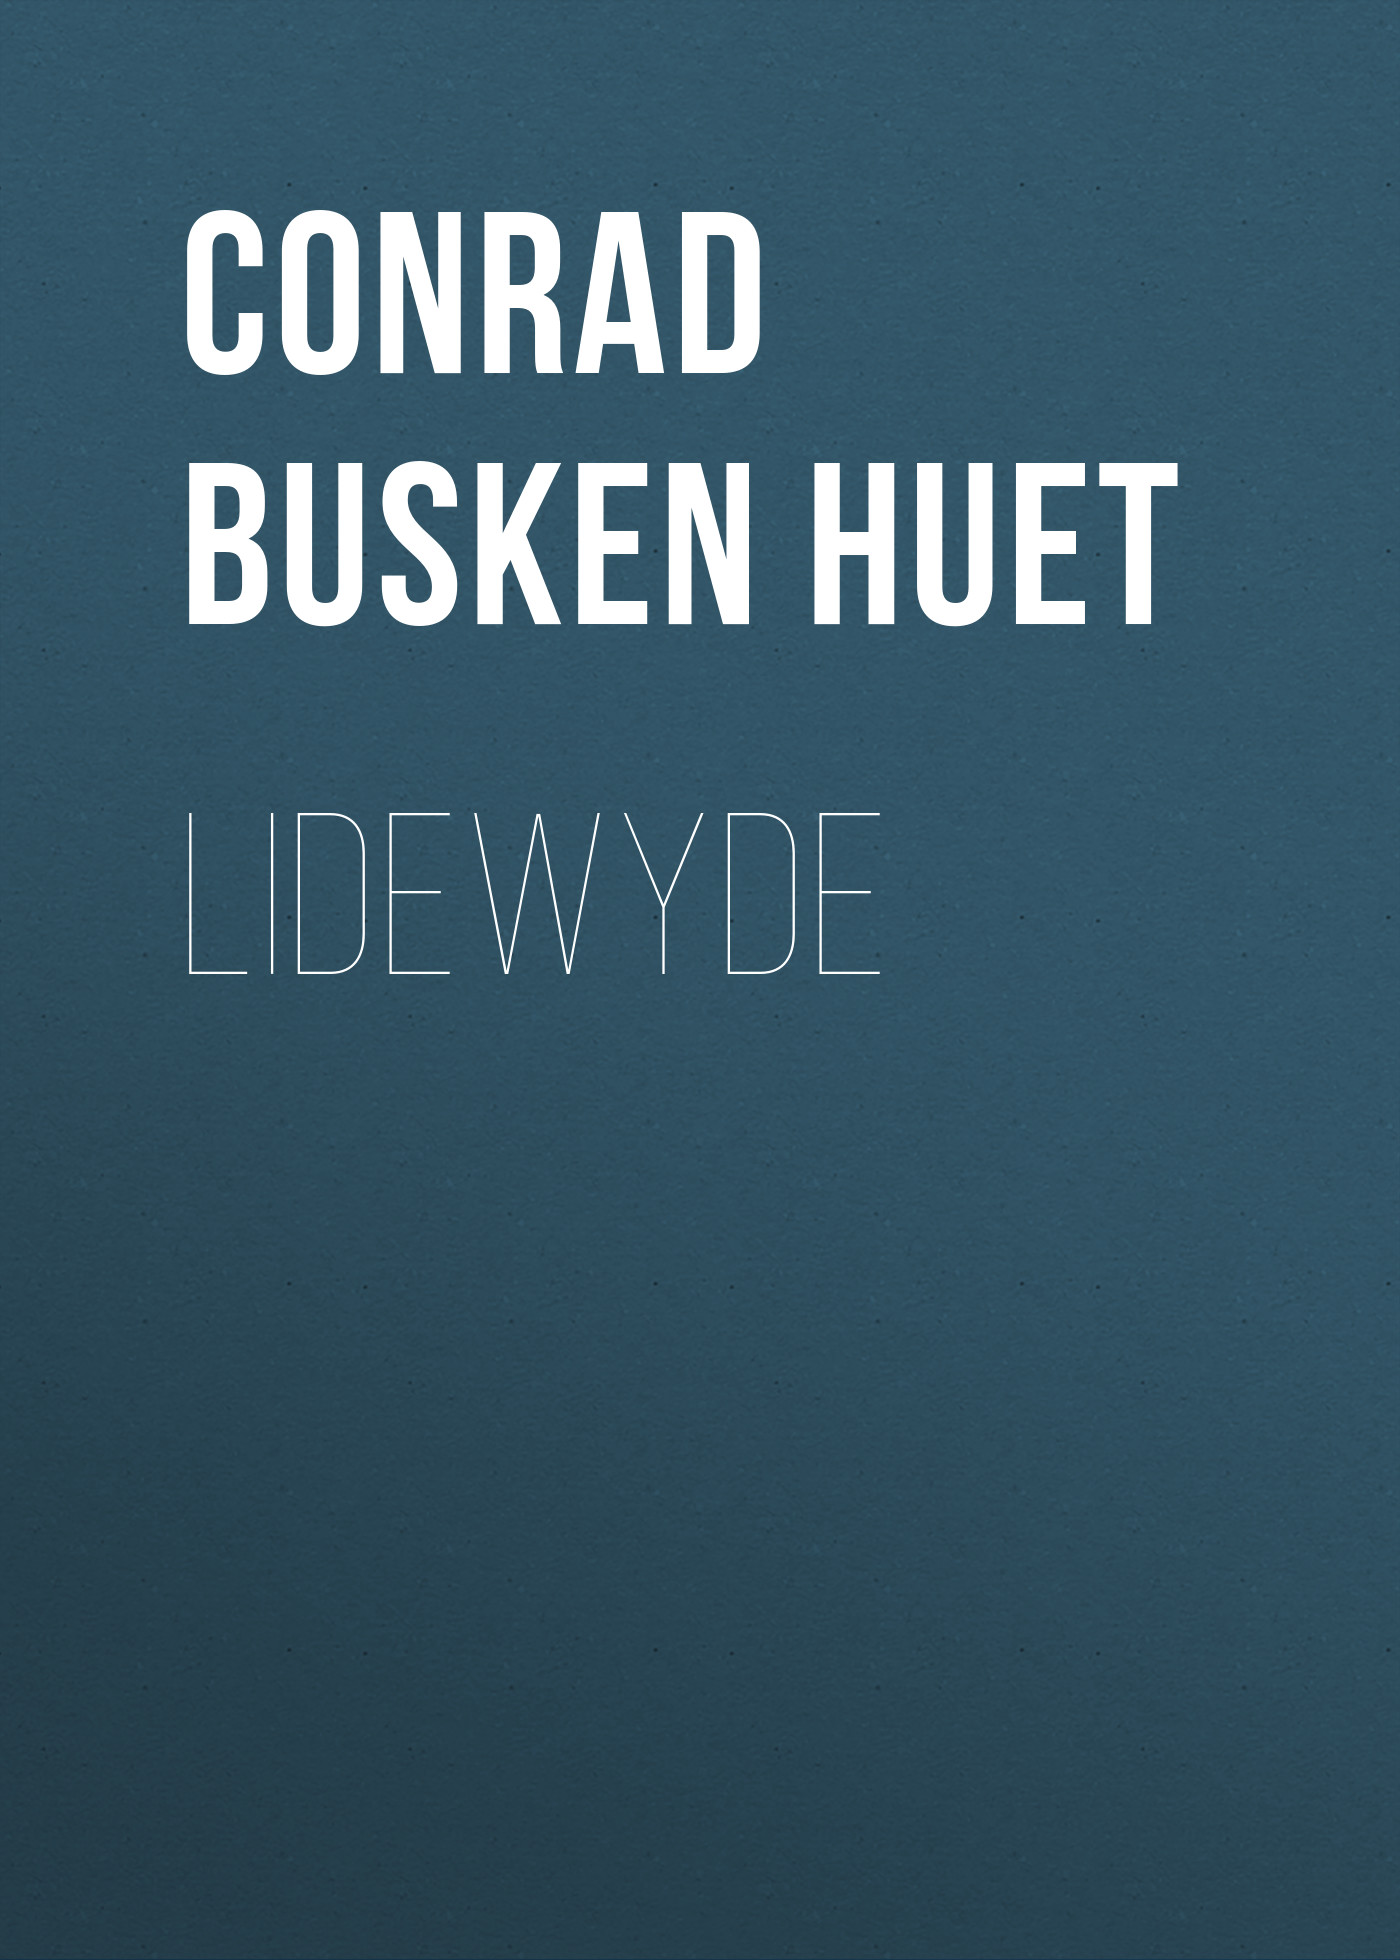 Книга Lidewyde из серии , созданная Conrad Busken Huet, может относится к жанру Зарубежная старинная литература, Зарубежная классика. Стоимость электронной книги Lidewyde с идентификатором 24180692 составляет 0.90 руб.